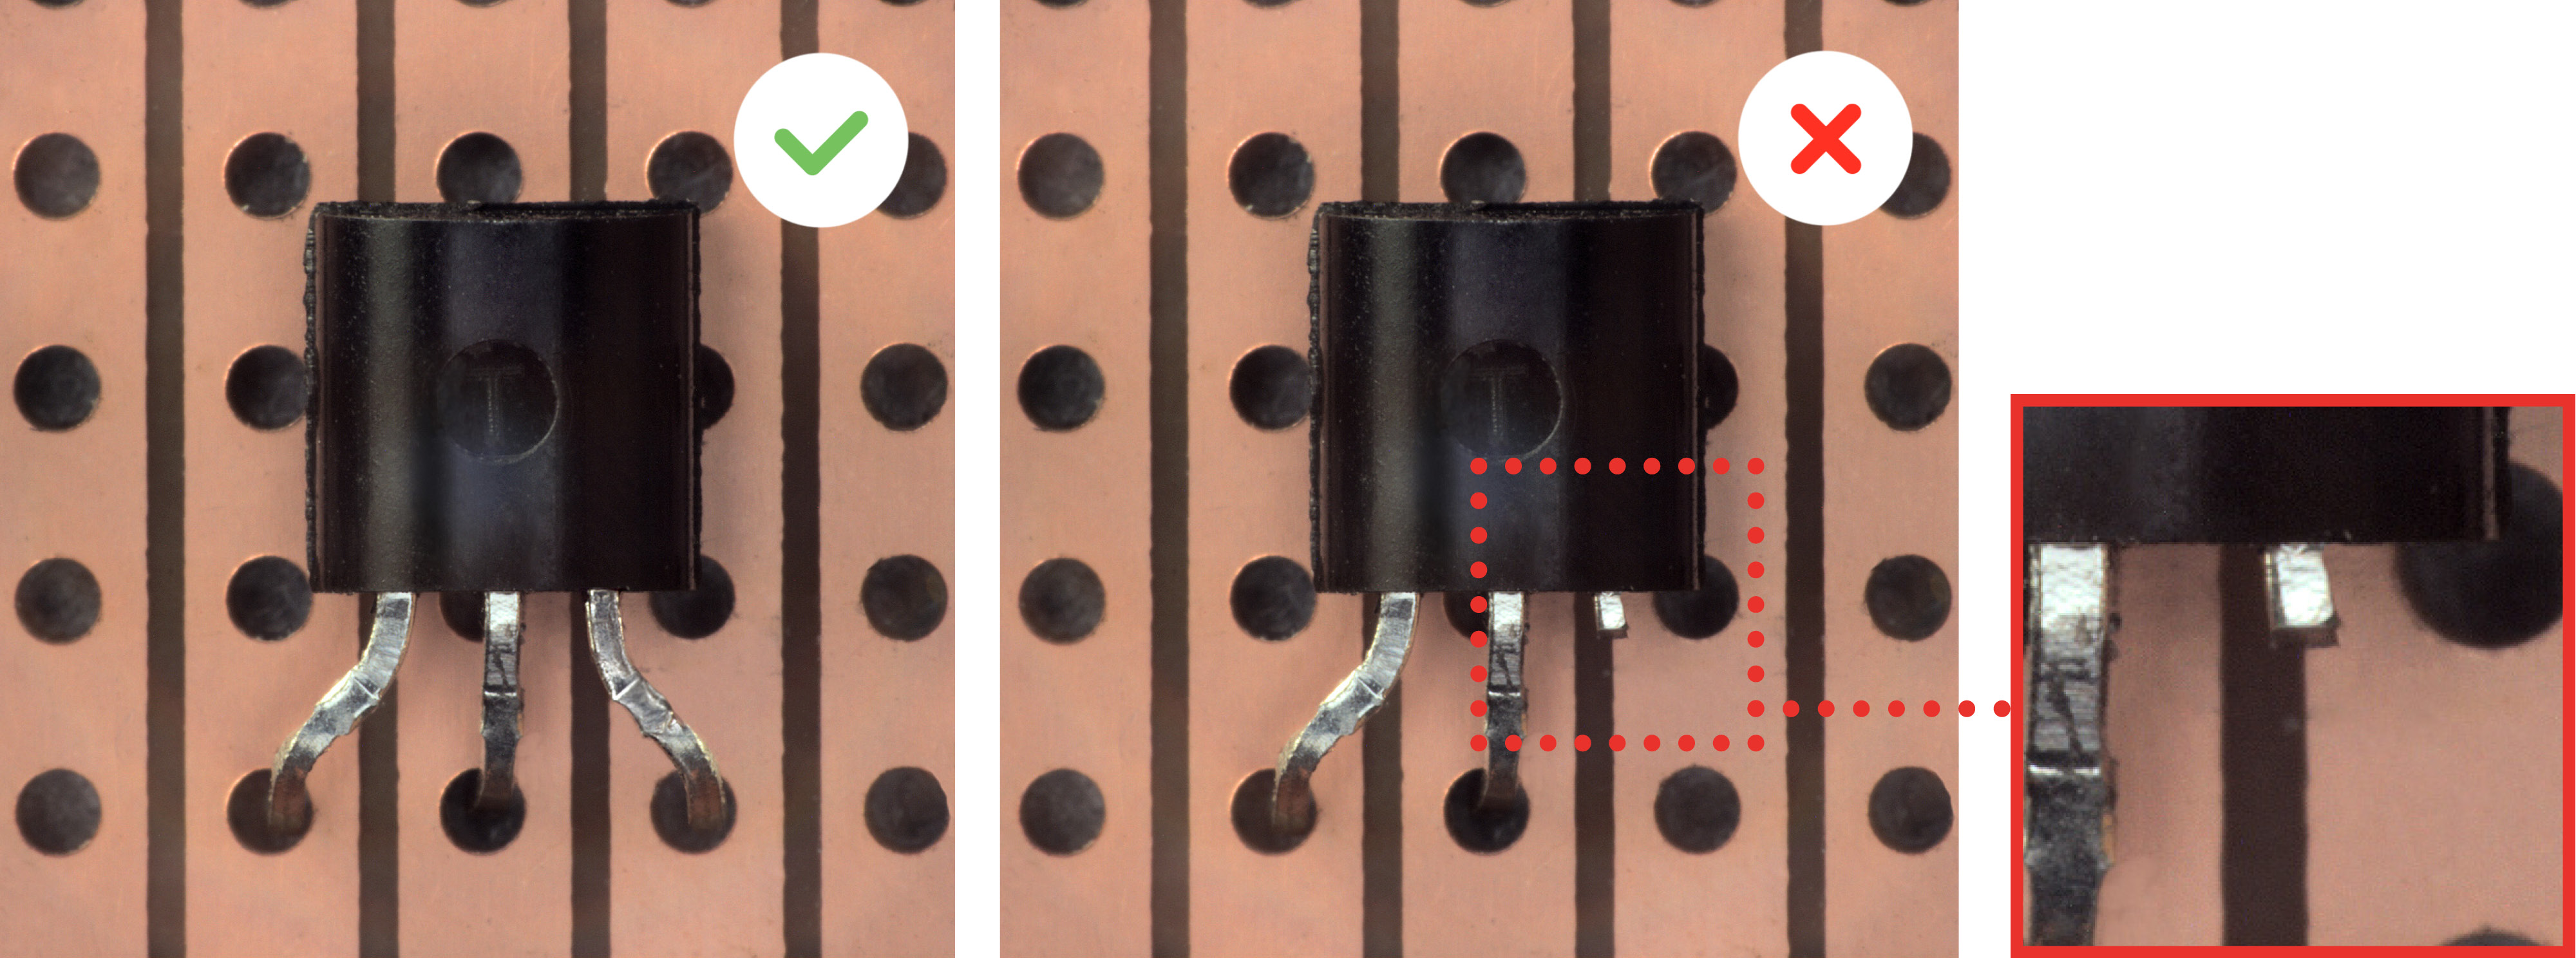 Mittels der KI-basierten Bilderkennung können defekte Chips Transistoren werden.